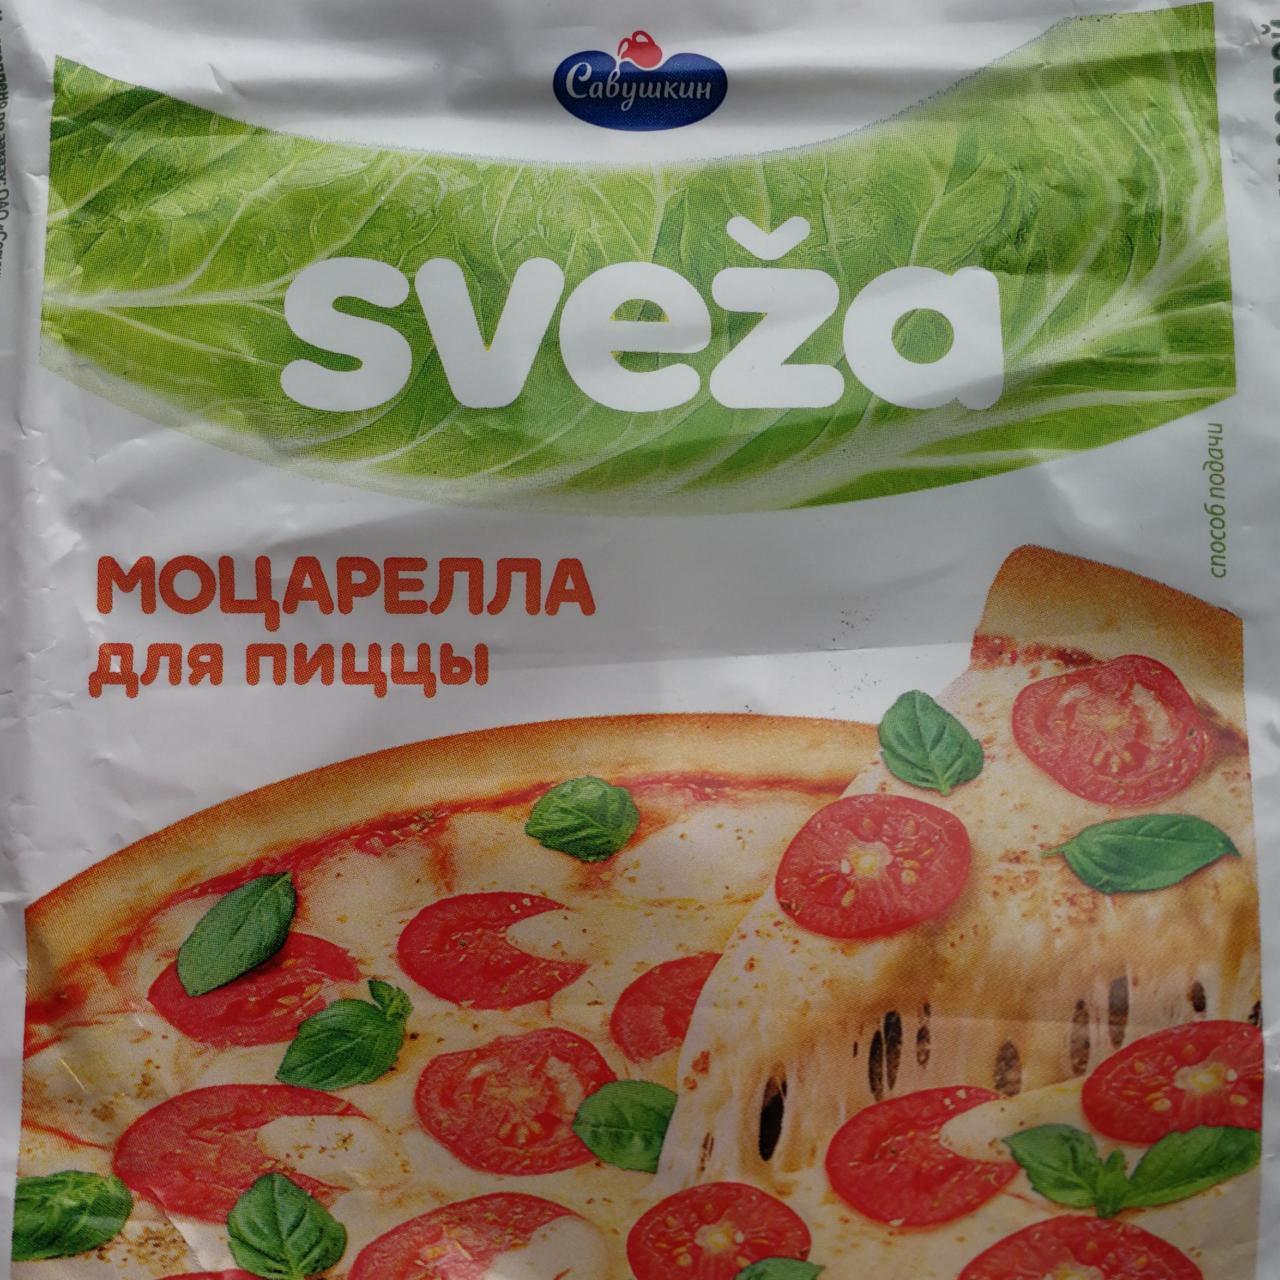 Фото - Сыр МОЦАРЕЛЛА для пиццы sveza Савушкин